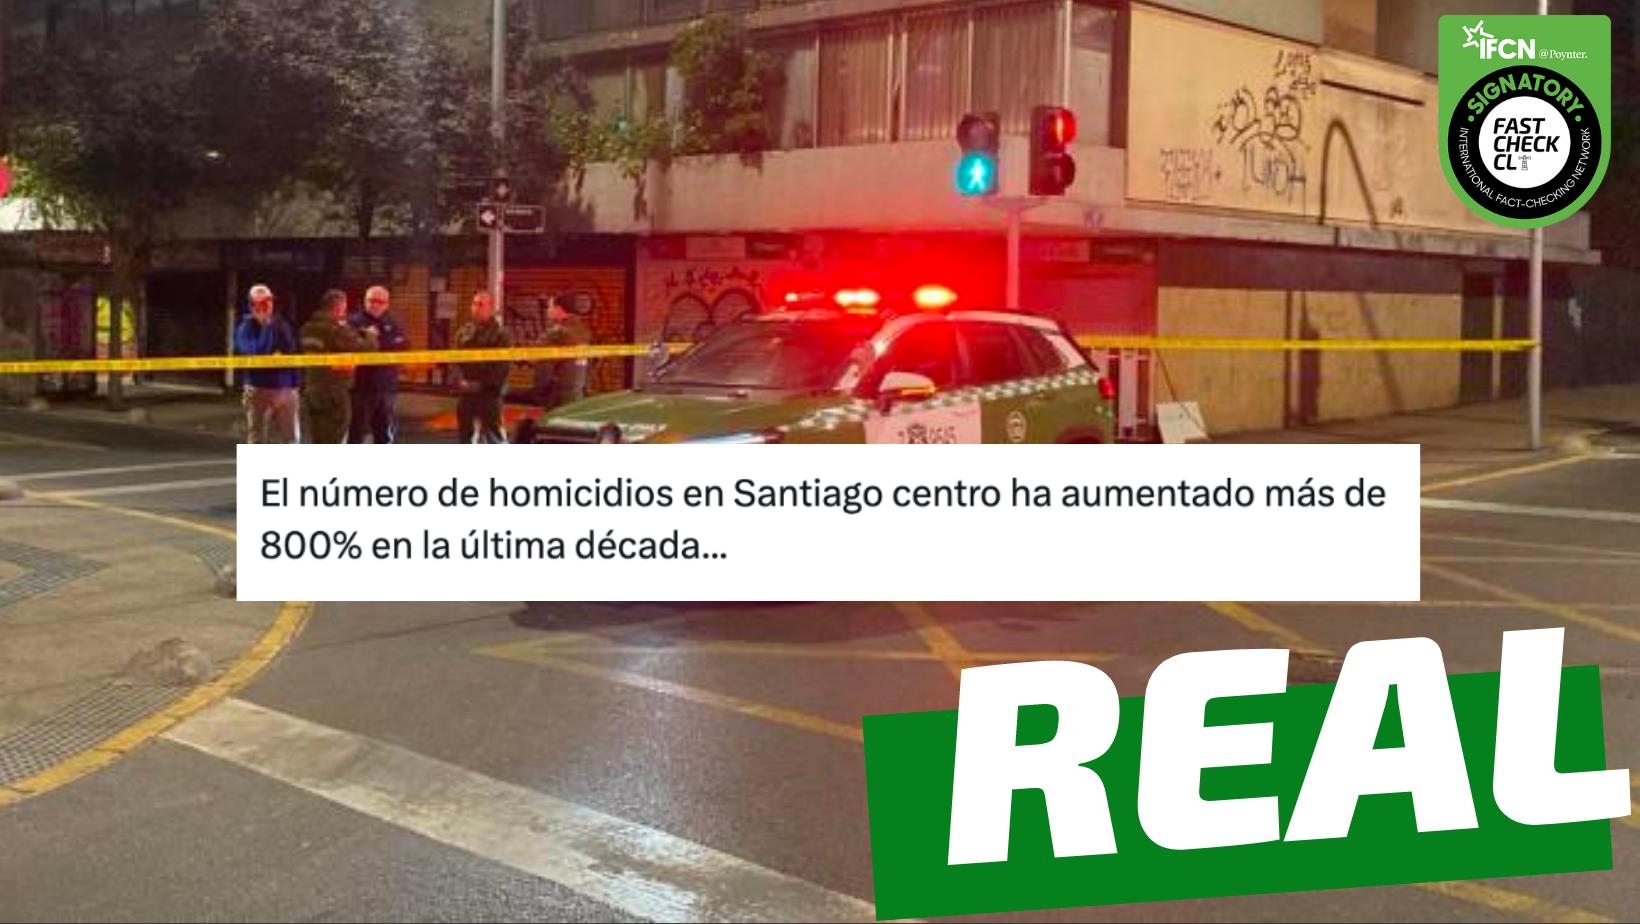 You are currently viewing “El número de homicidios en Santiago centro ha aumentado más de 800% en la última década”: #Real